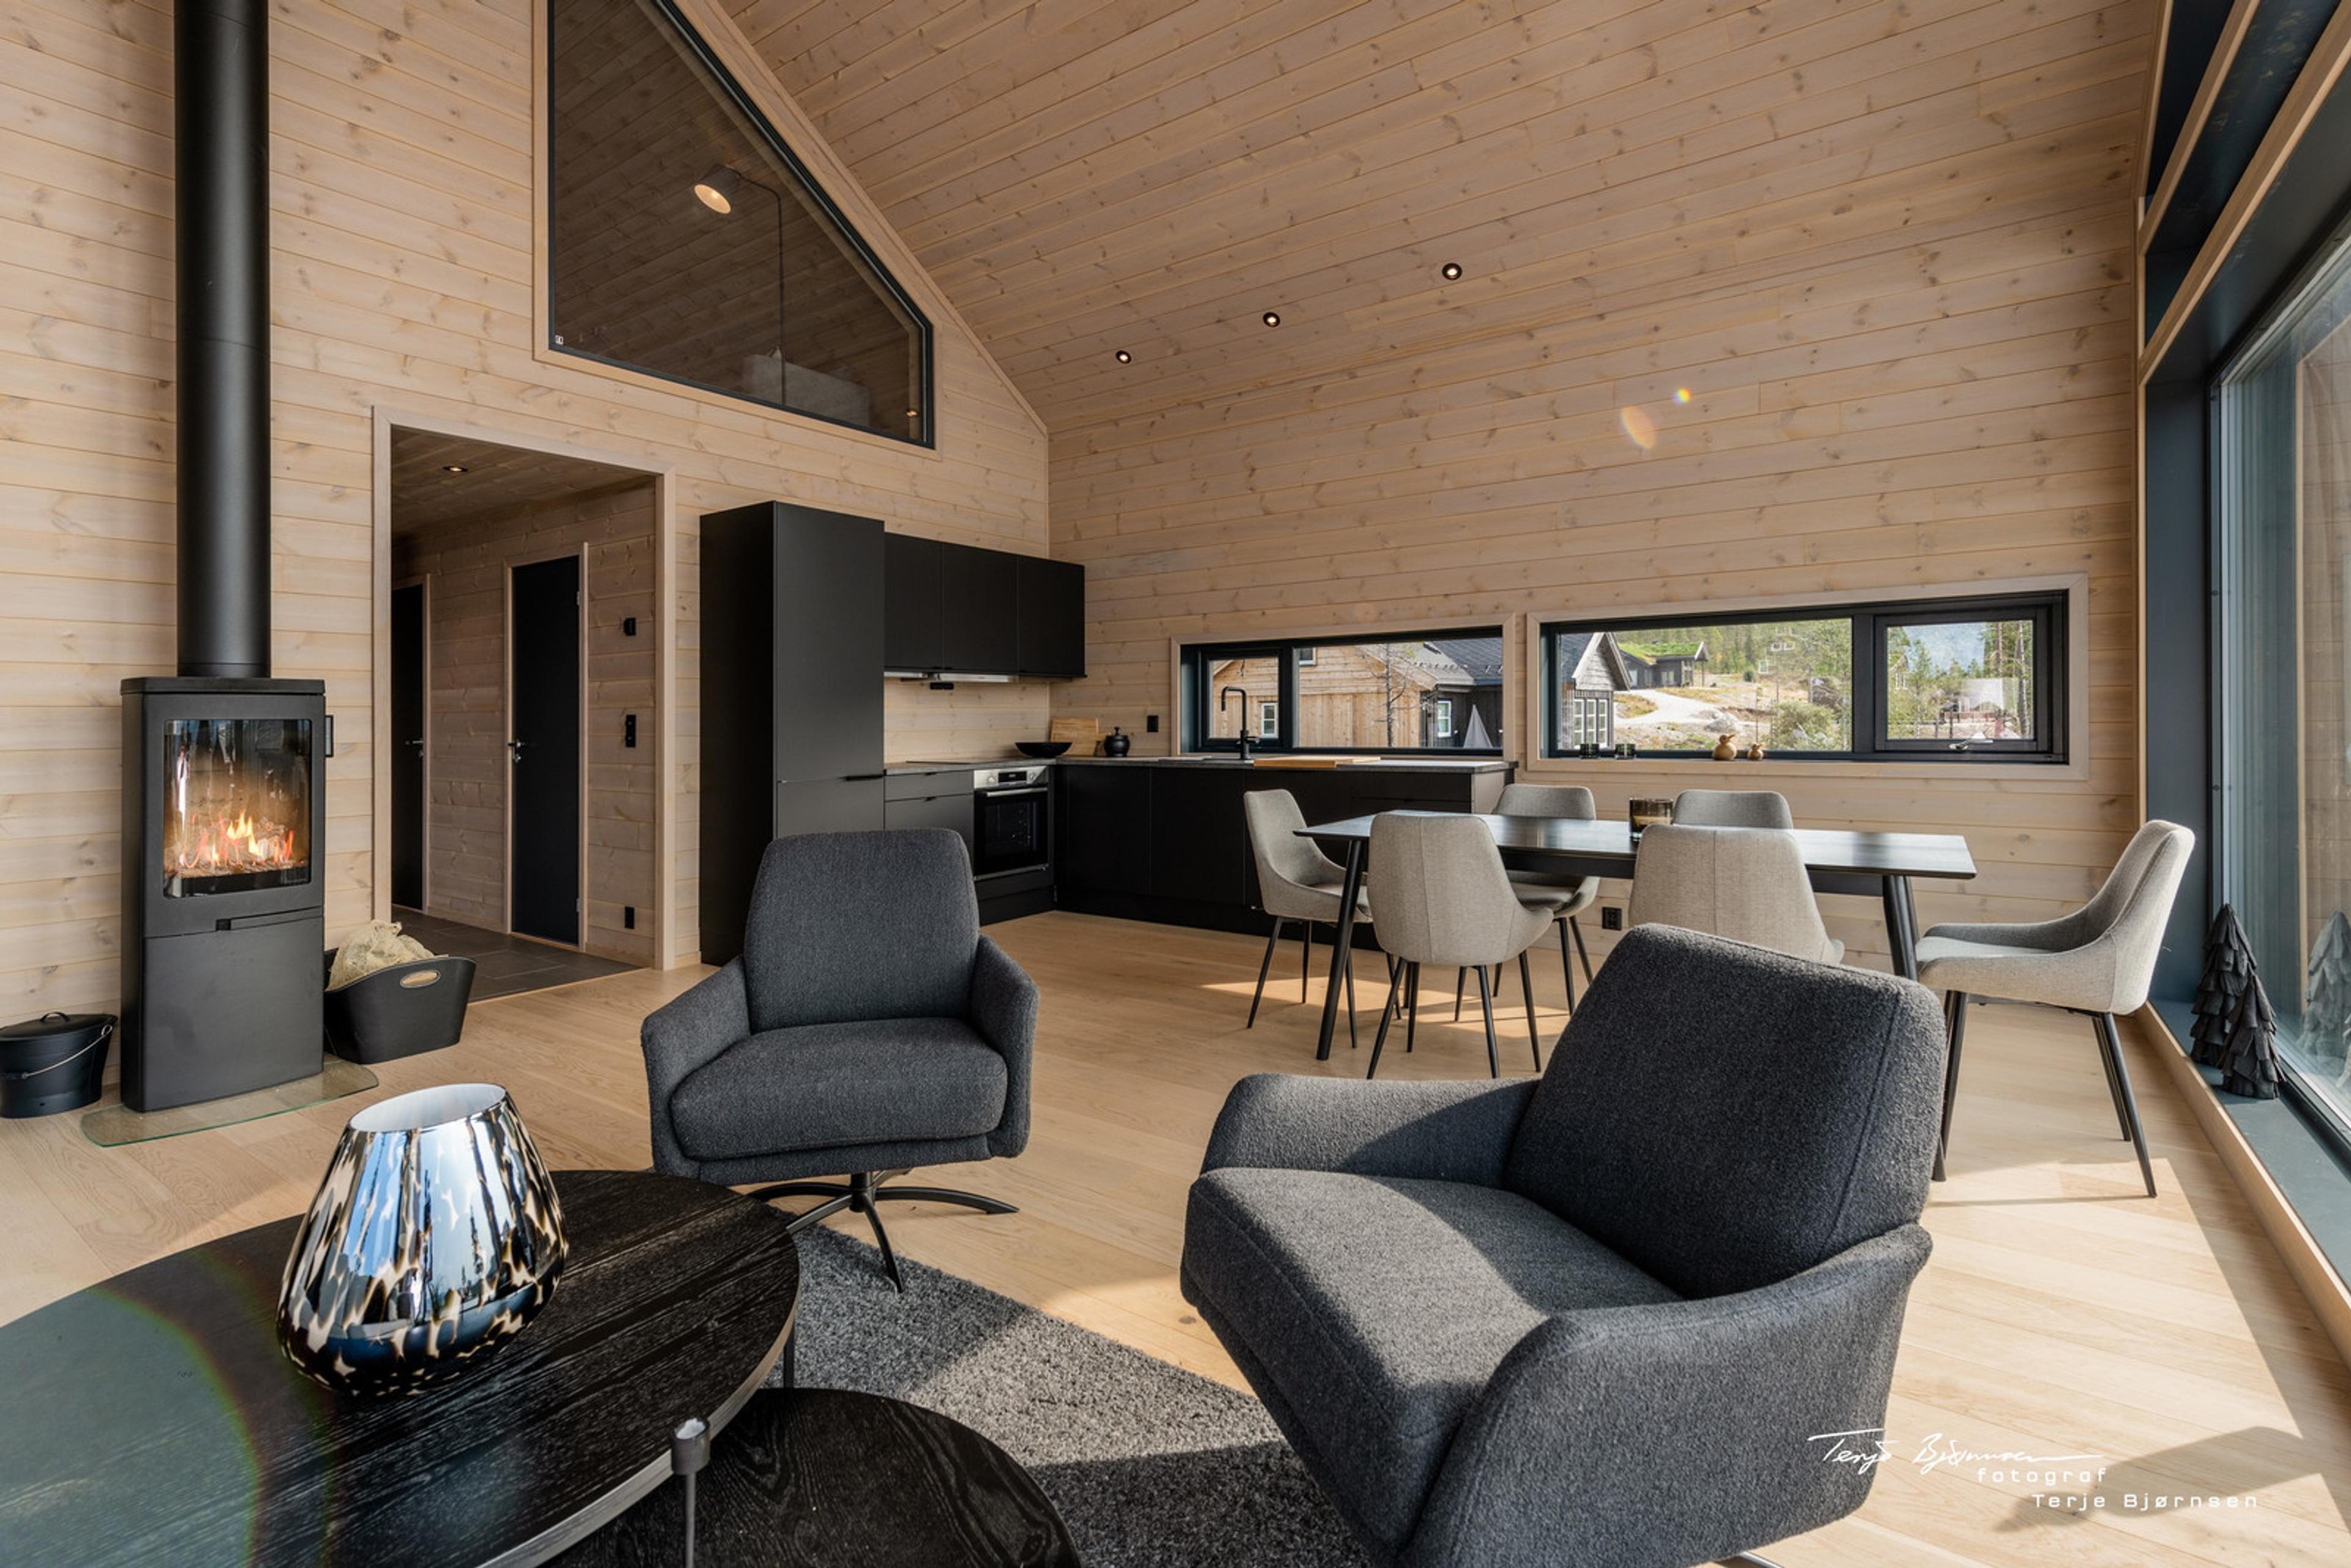 Turufjell - Hallingdal Innflytningsklar, møblert moderne hytte med SKI IN/OUT